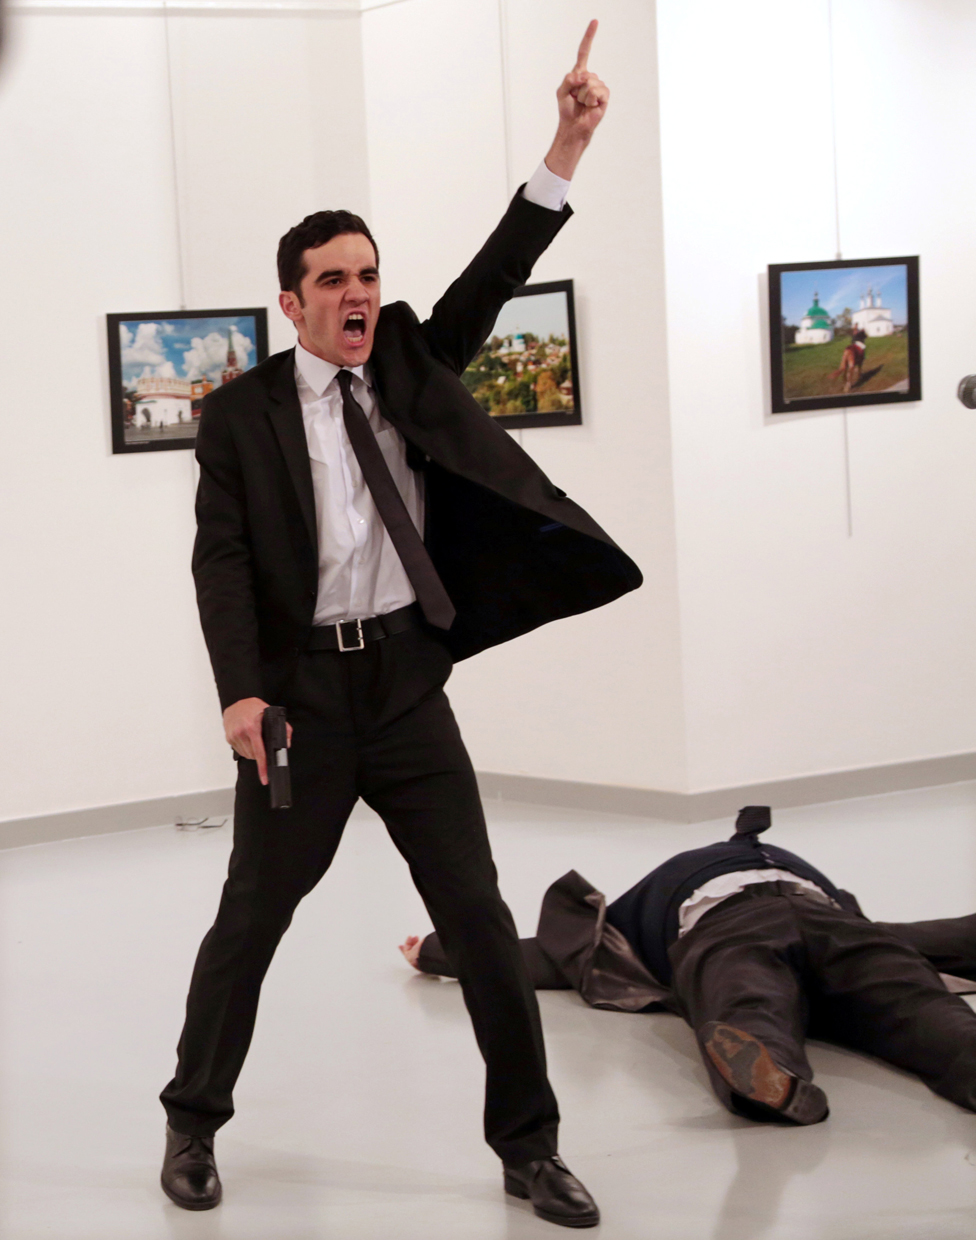 Мевлют Мерт Алтинтас кричит после того, как застрелил Андрея Карлова, посла России в Турции, в художественной галерее в Анкаре, Турция, 19 декабря 2016 года.